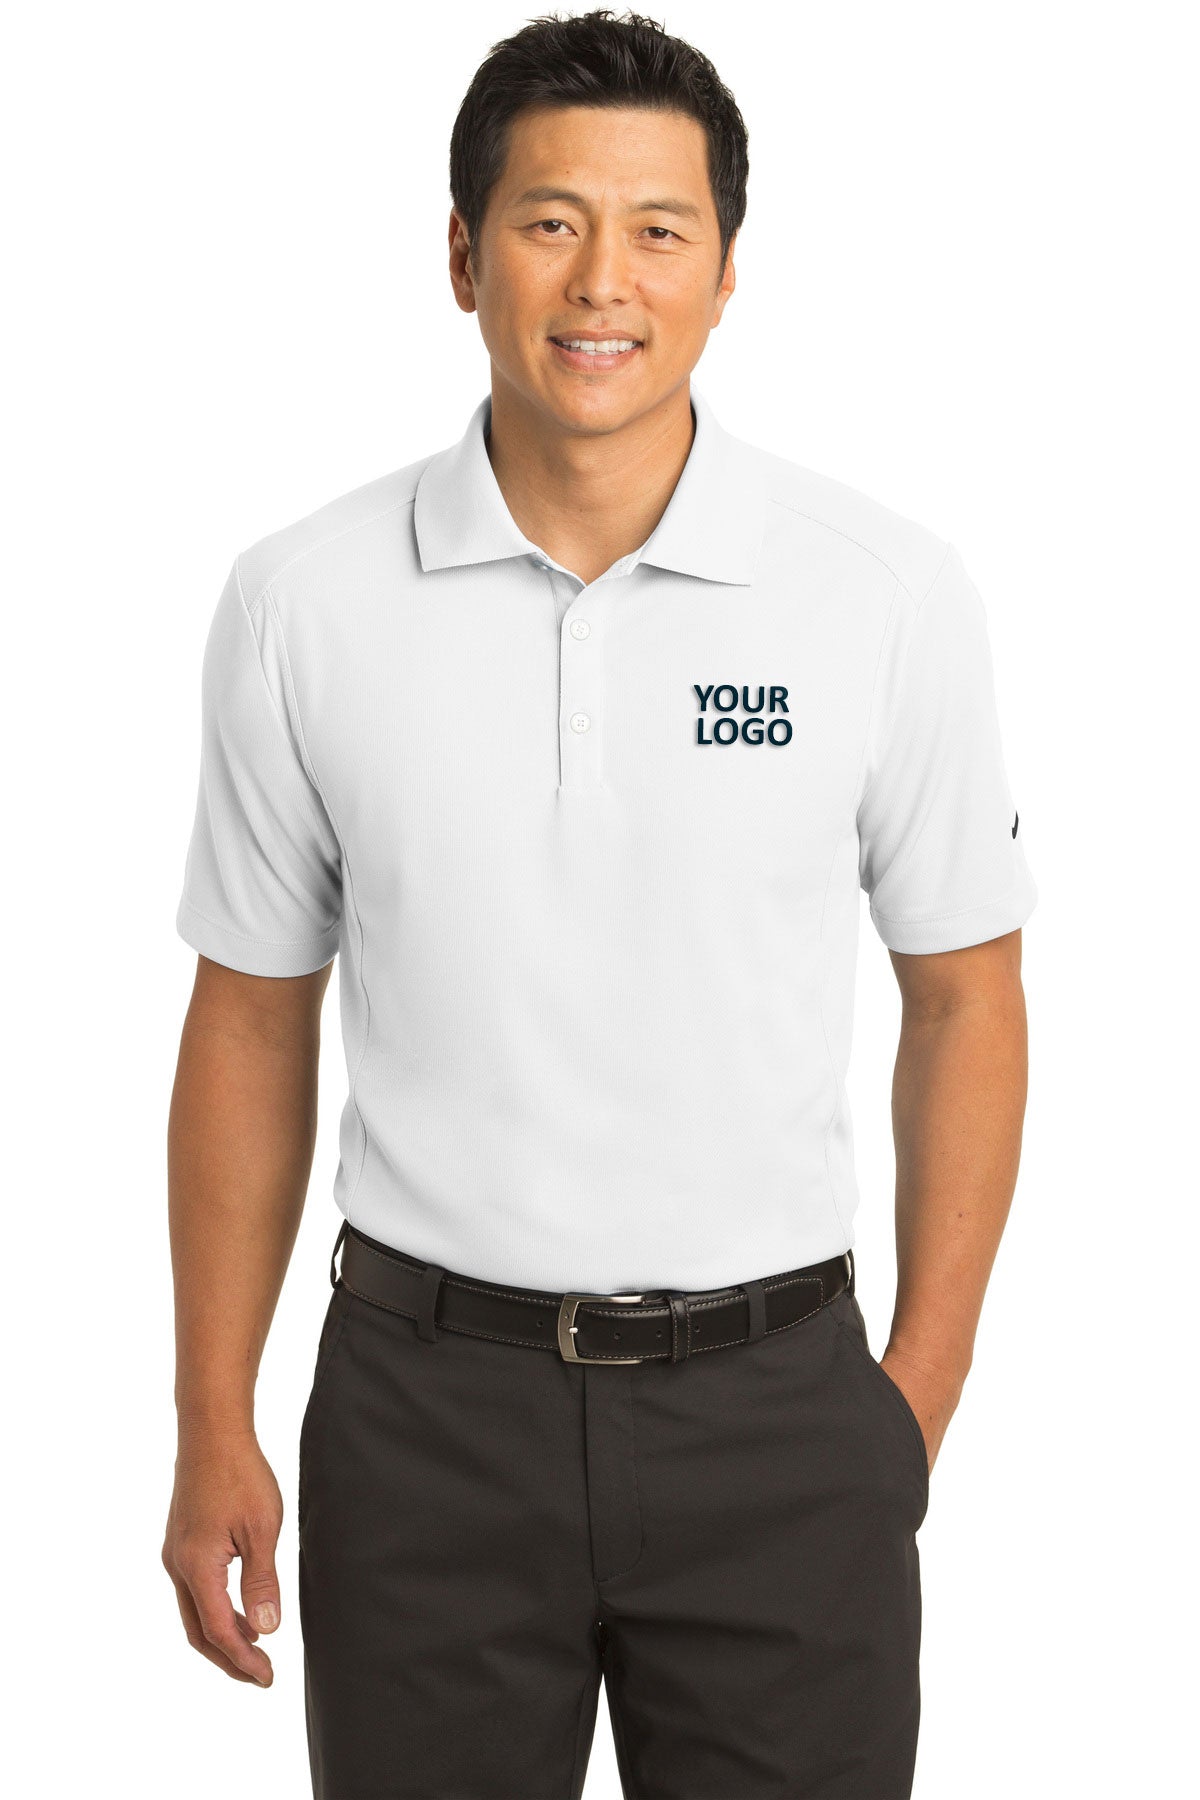 nike white 267020 polo shirts with logos